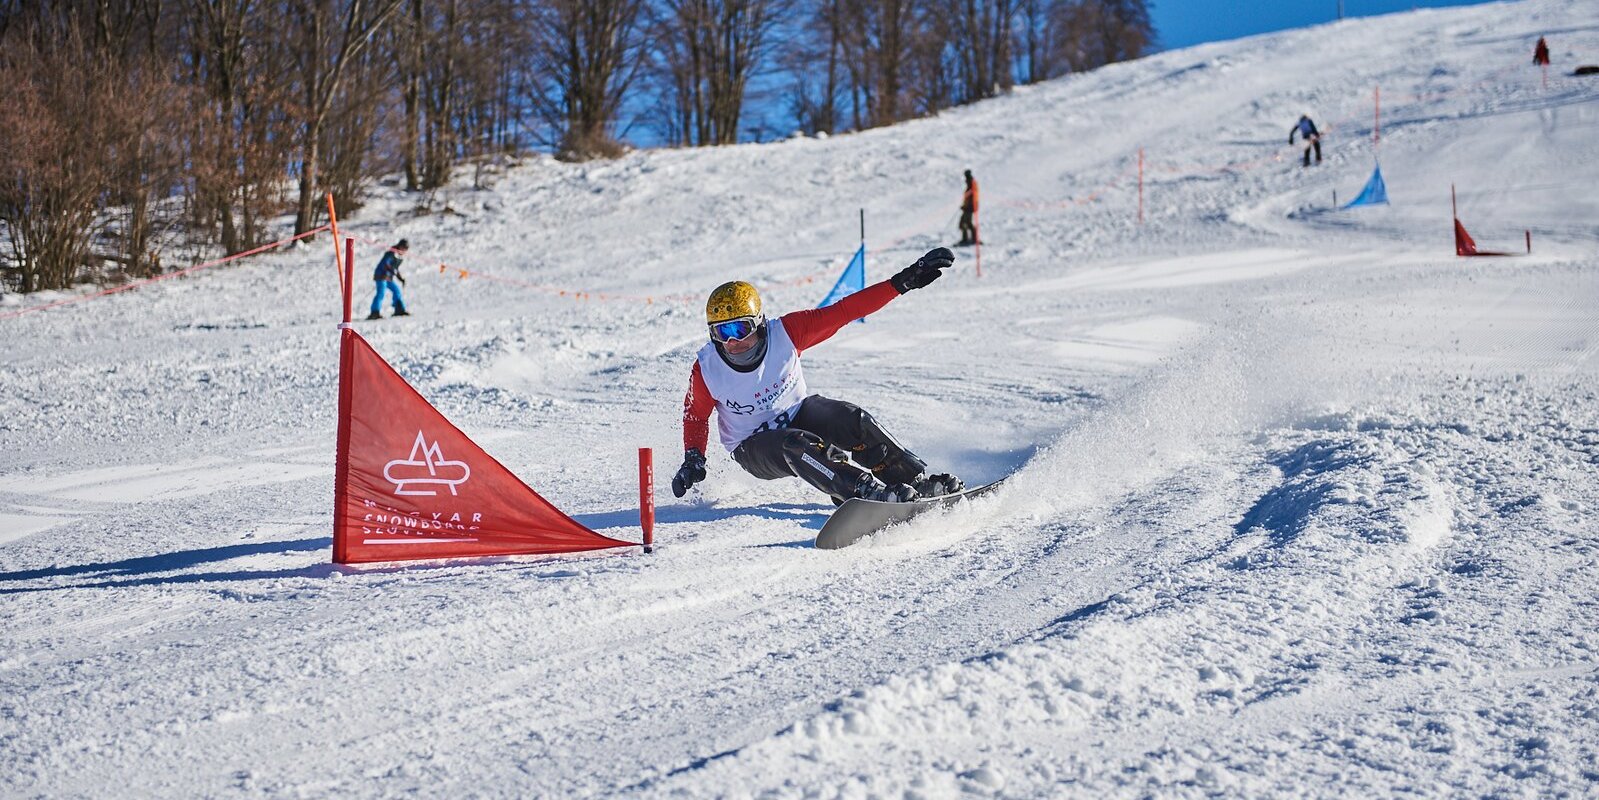 Kép: Magyar Snowboard Szövetség, FSOB 2021 @MSBSZ